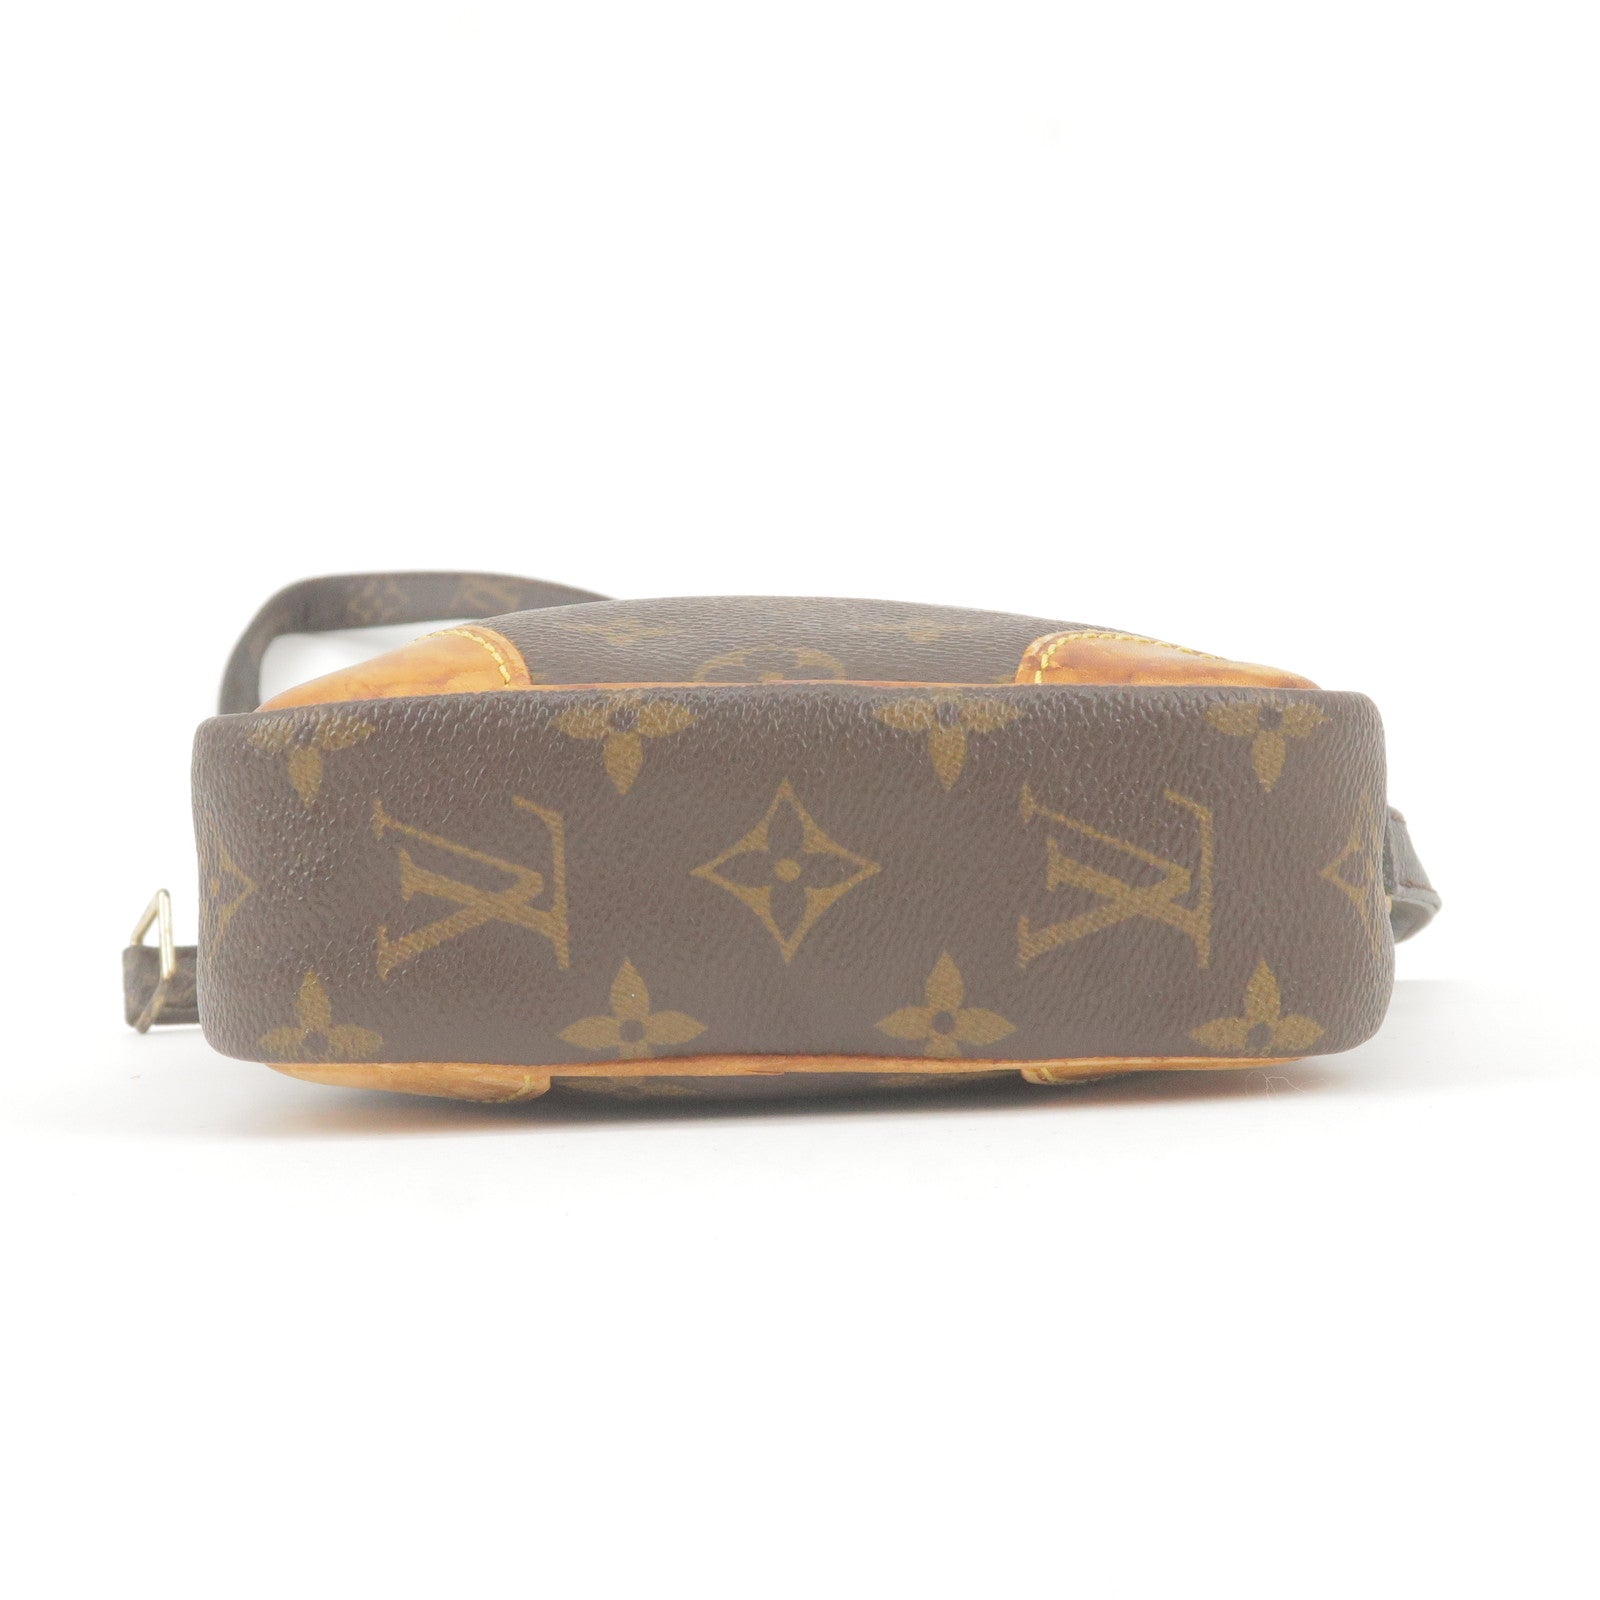 3zb1646] Auth Louis Vuitton Shoulder Bag Monogram Danube M45266